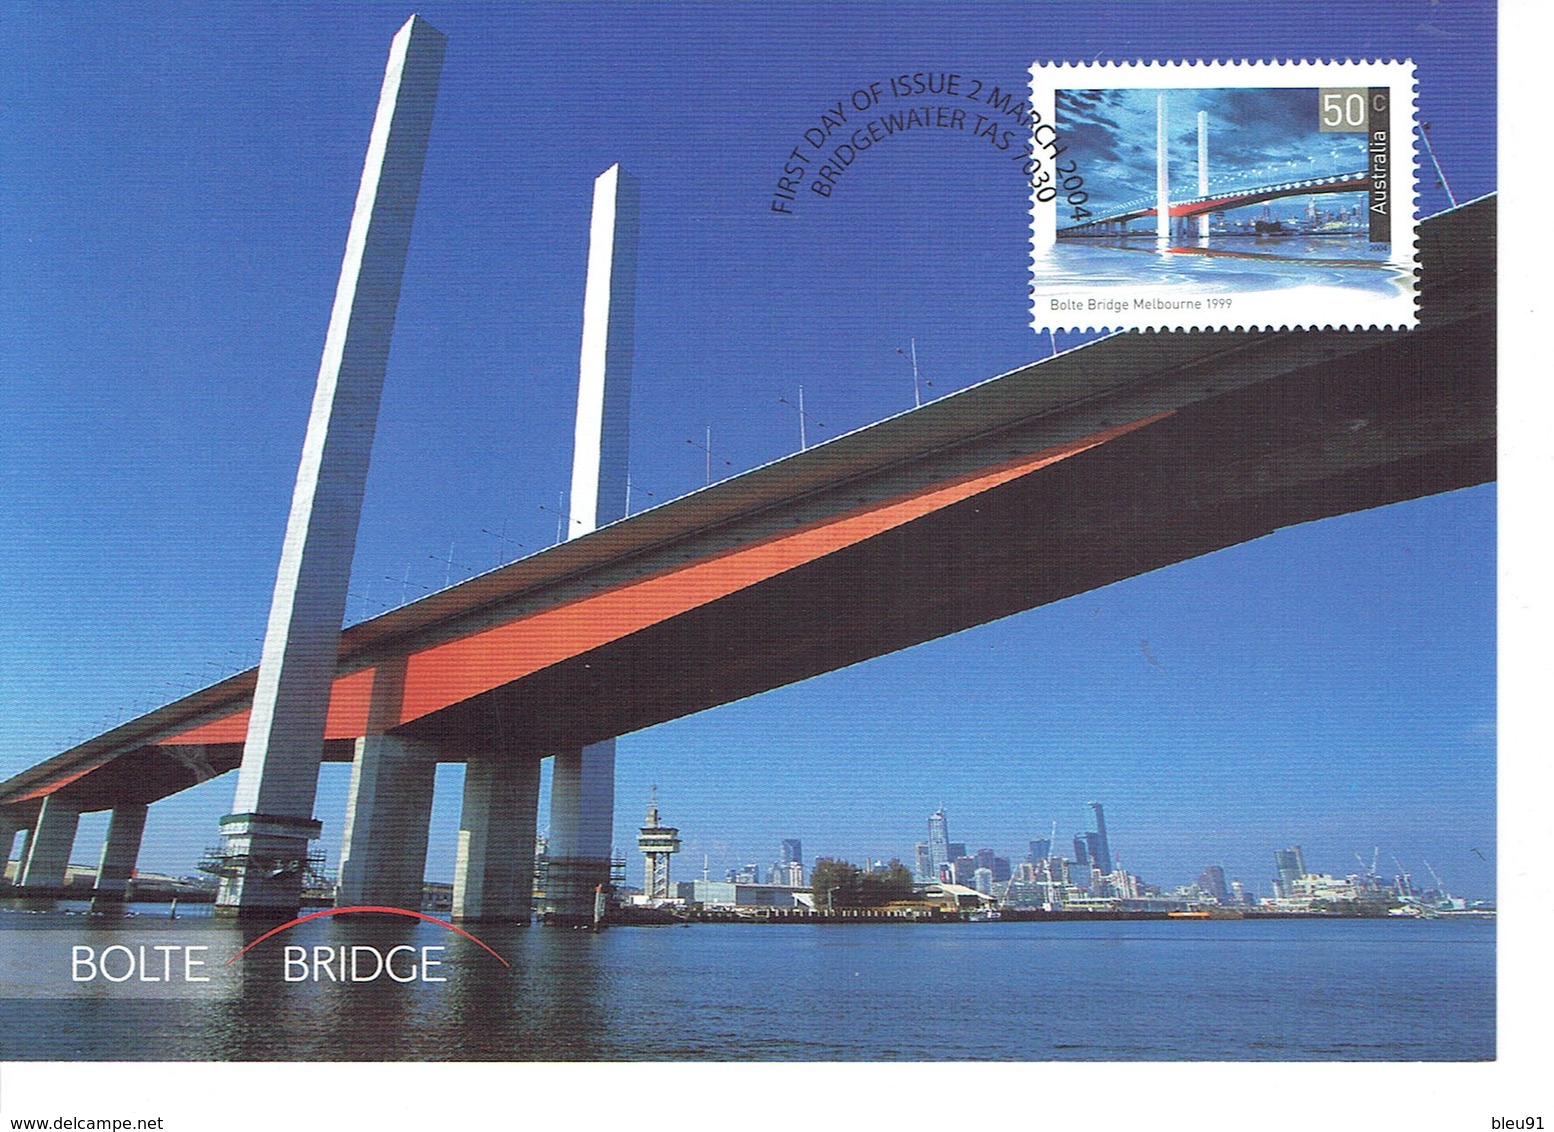 CARTE MAXIMUM MELBOURNE BOLTE BRIDGE - Cartoline Maximum